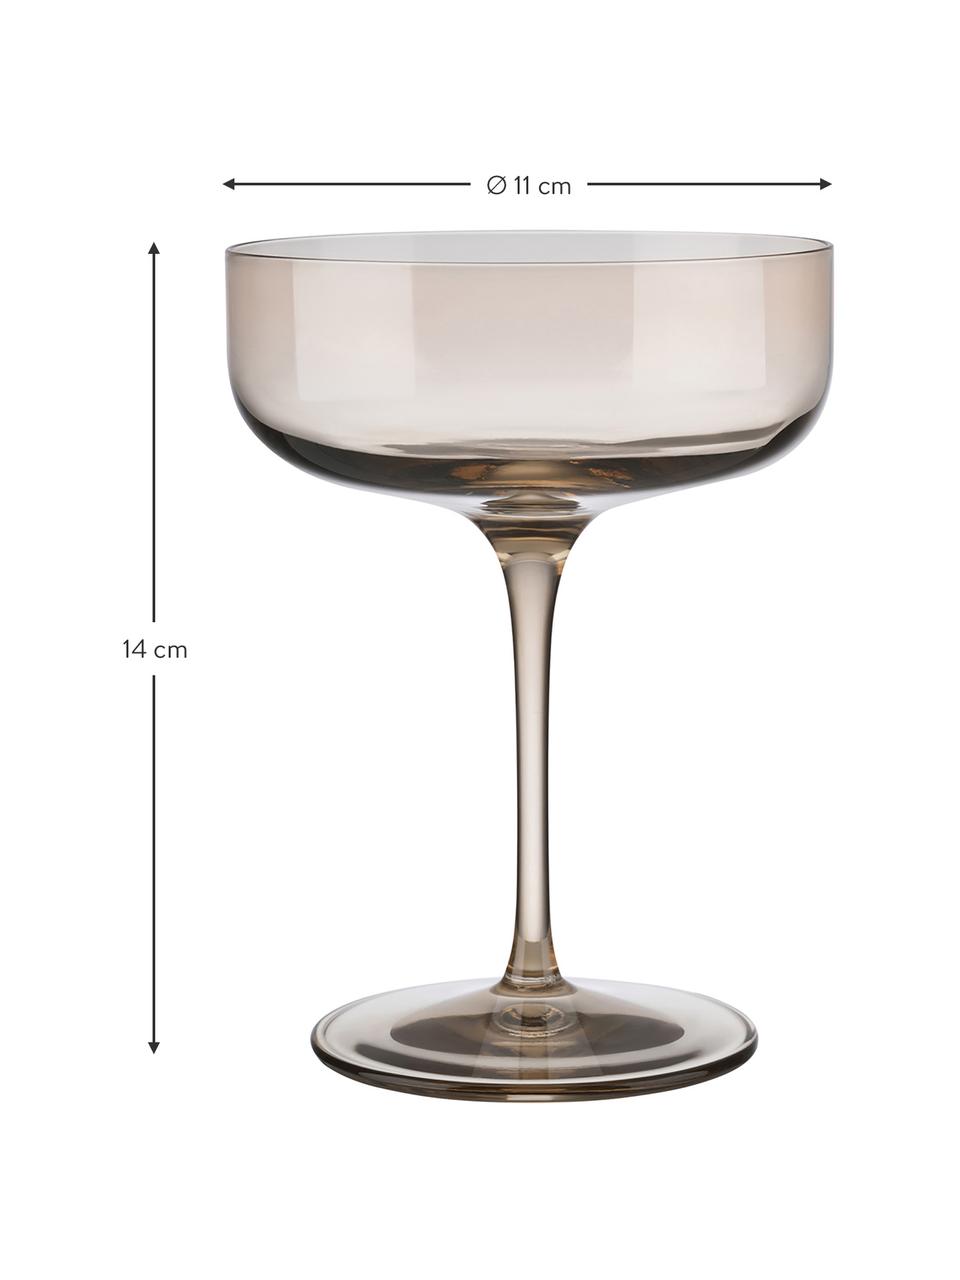 Champagnerschalen Fuum in Braun, 4 Stück, Glas, Beige, transparent, Ø 11 x H 14 cm, 300 ml